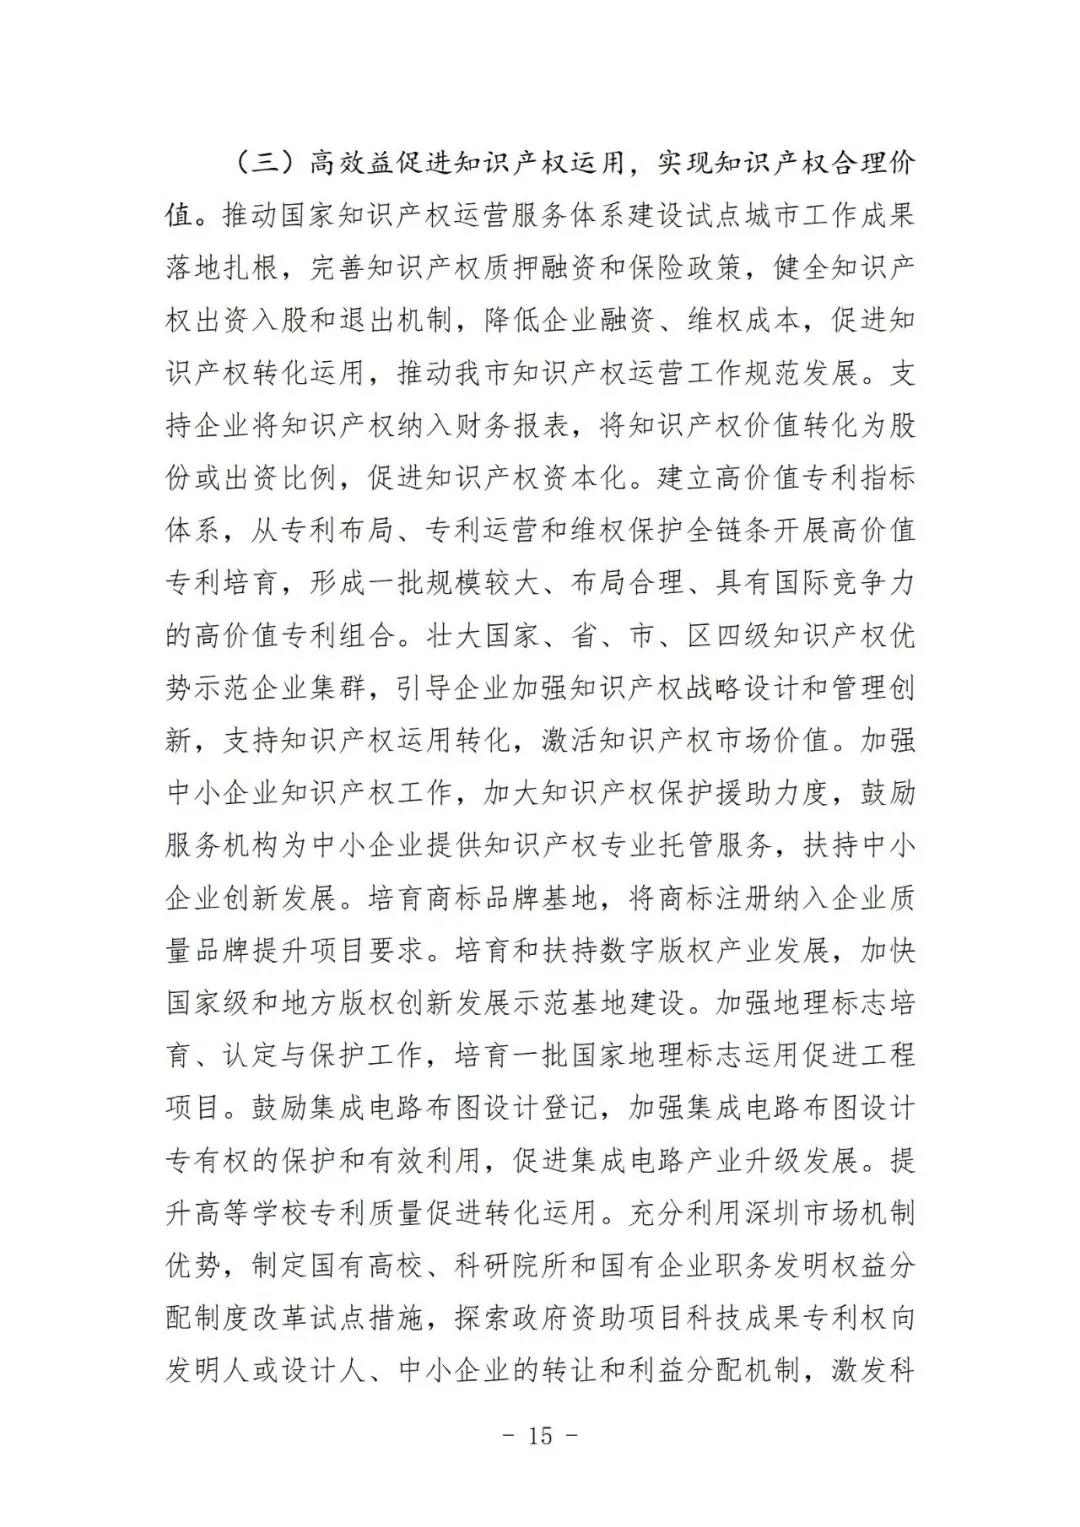 《深圳市知识产权保护和运用“十四五”规划》全文发布！